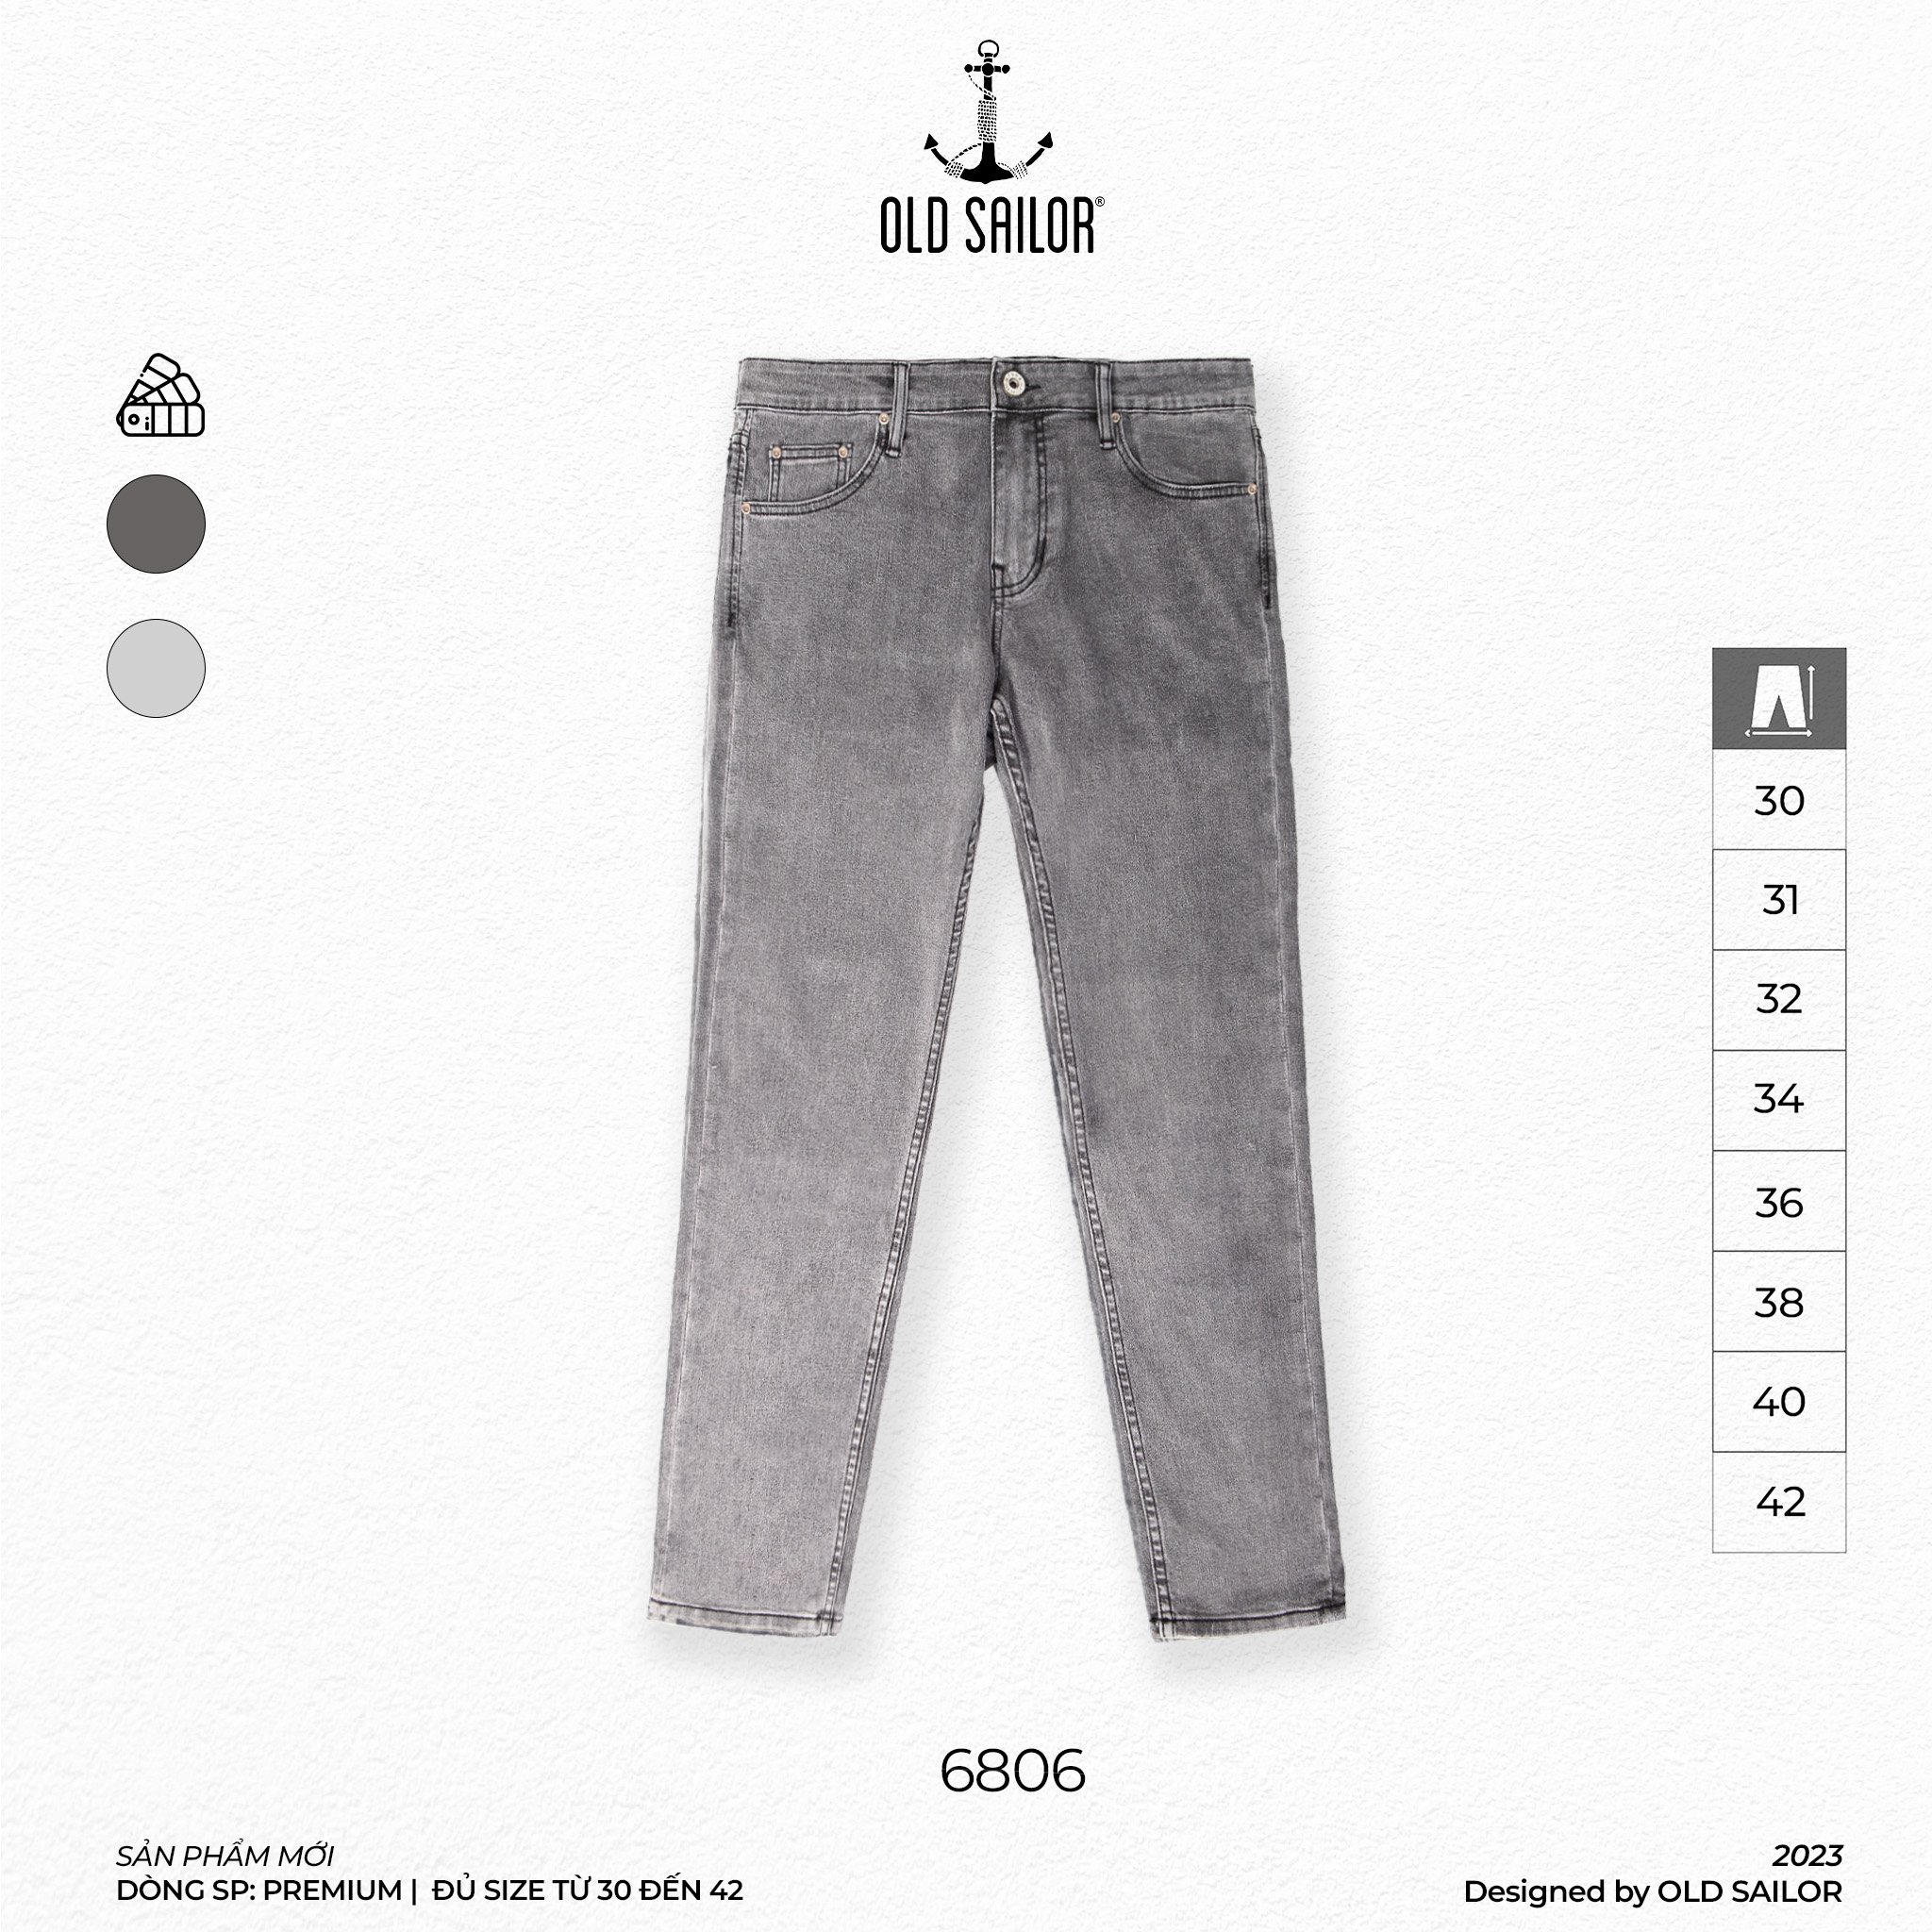 Quần jeans nam form slimfit Old Sailor - 6806 - Big size upto 42